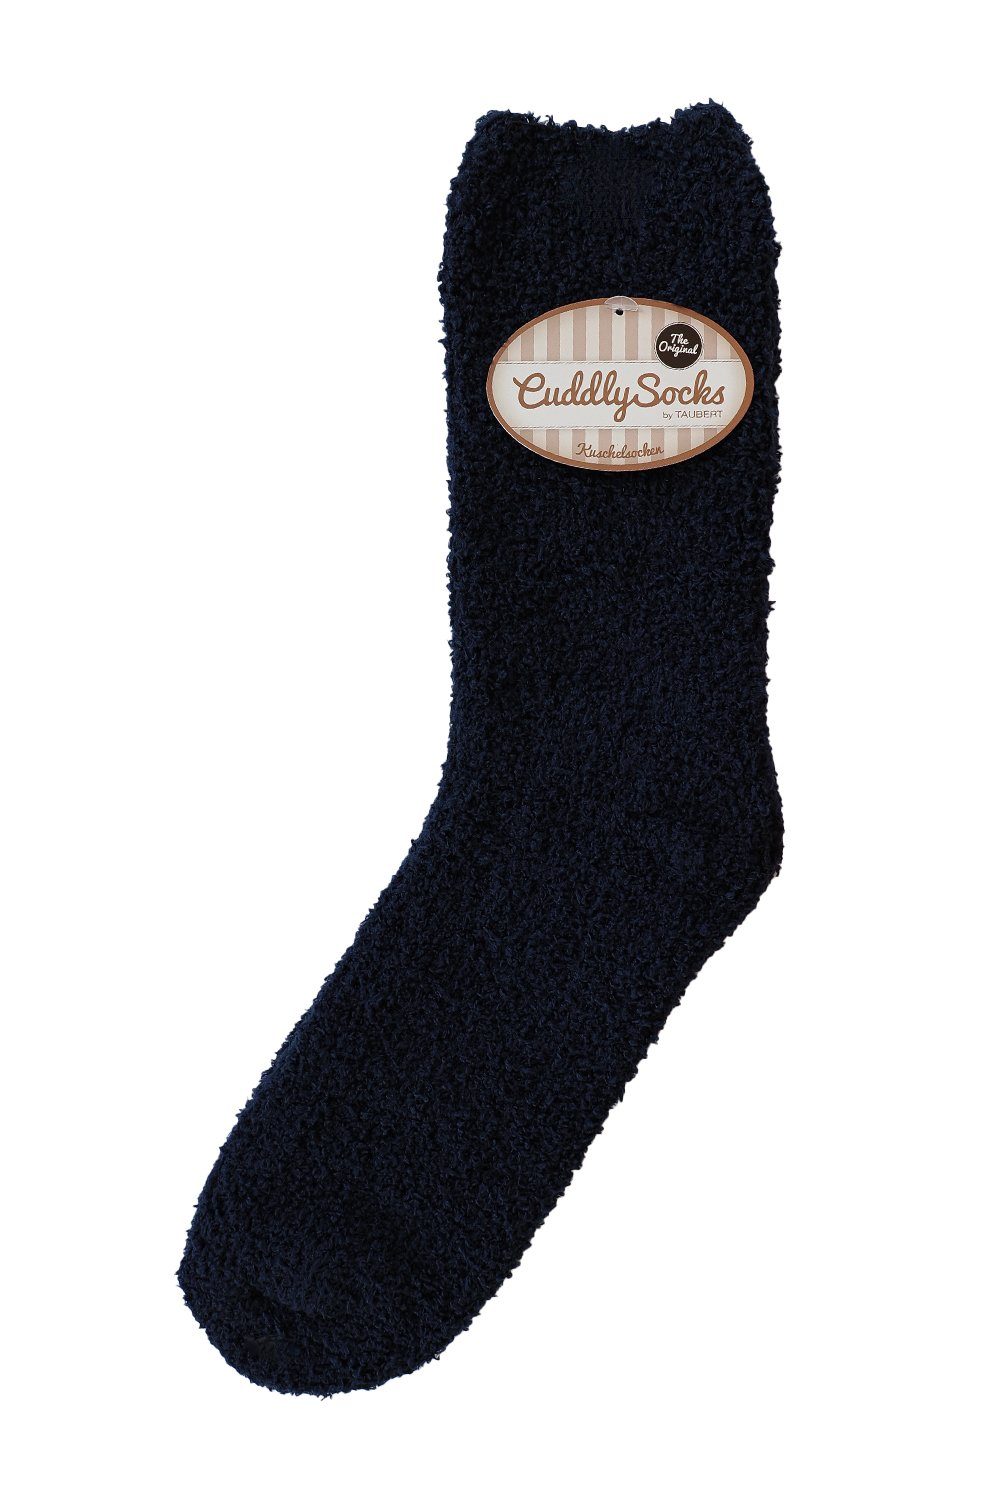 Taubert Socken Socken - Men 733900-588 navy | Socken